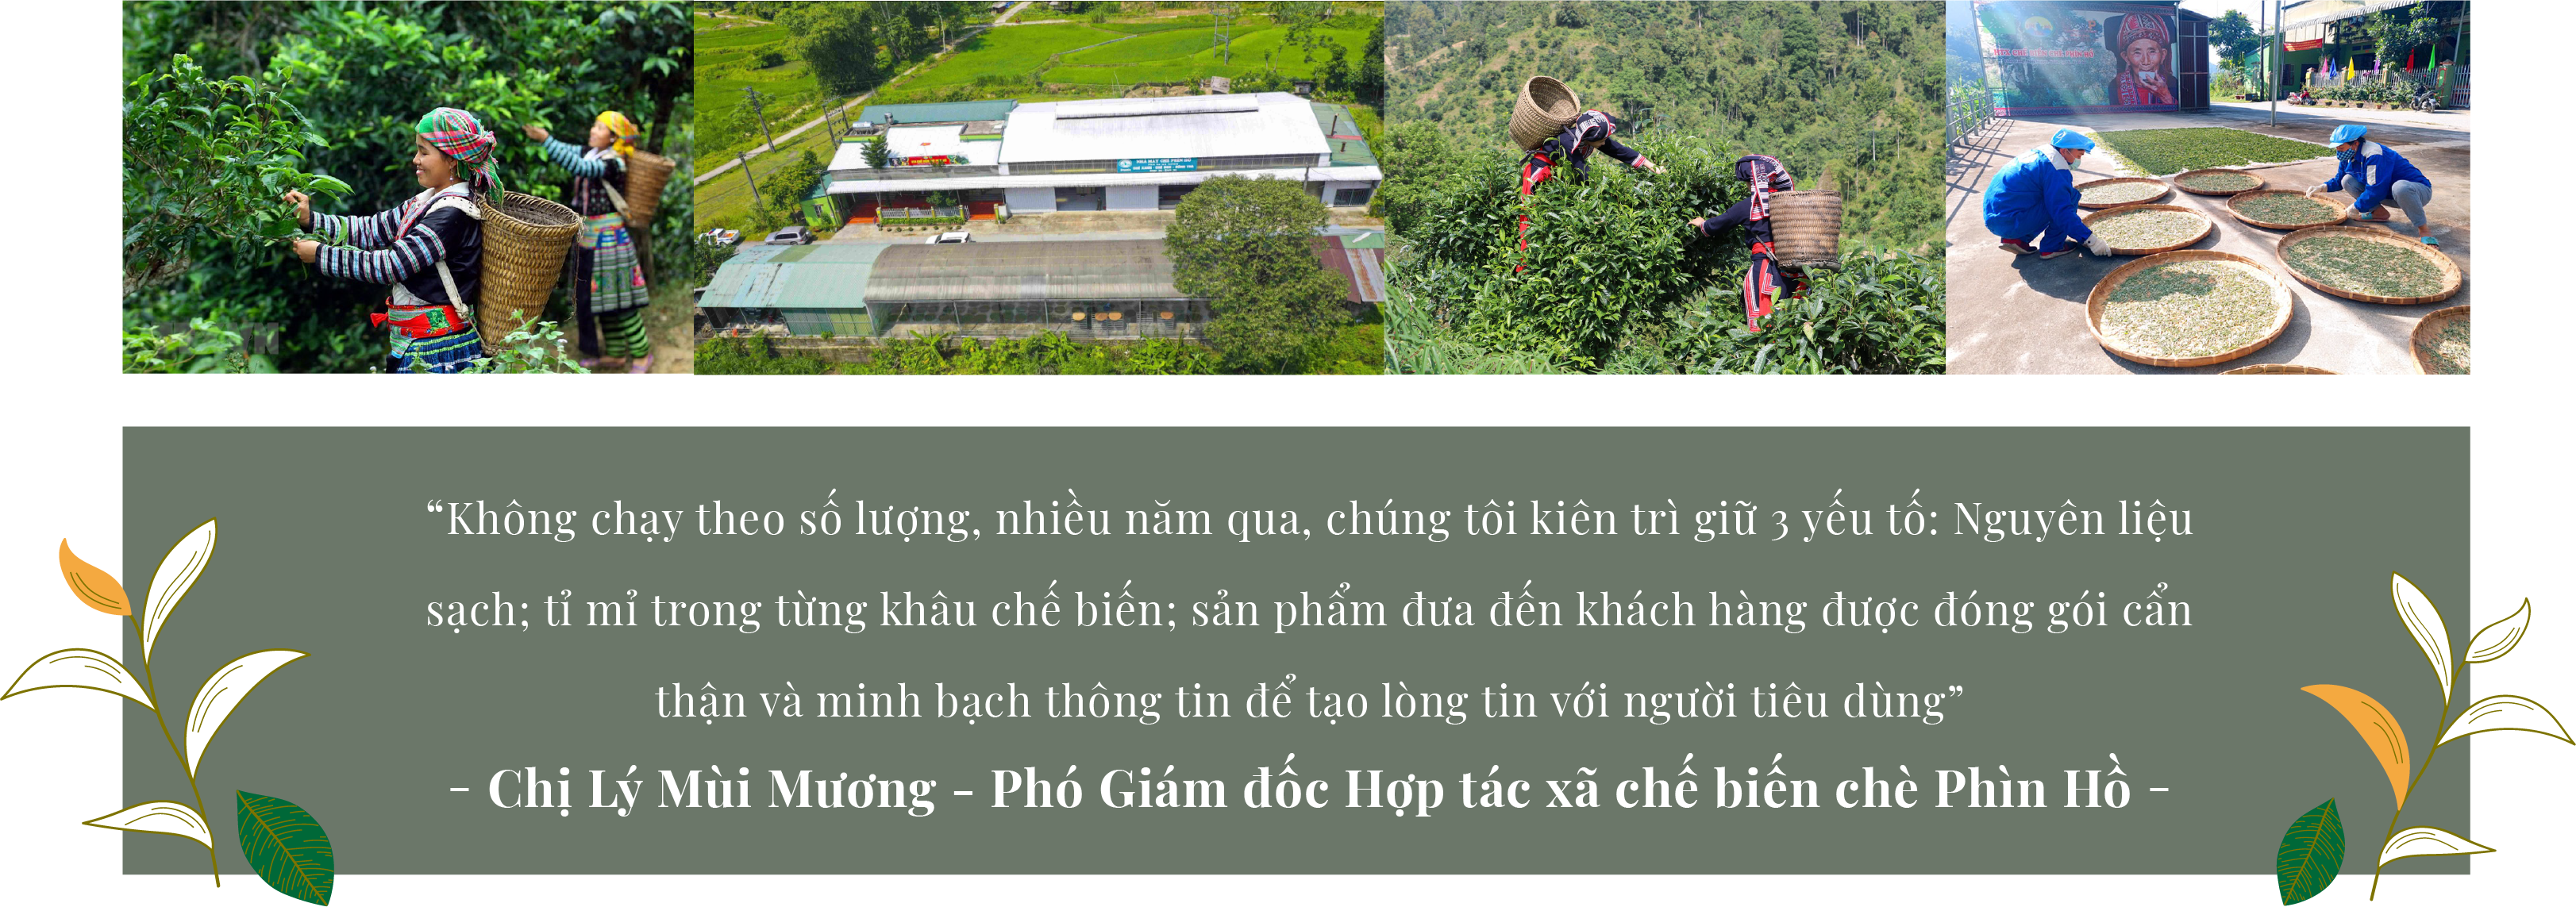 Viết tiếp câu chuyện đẹp cho cây chè Shan tuyết Hà Giang